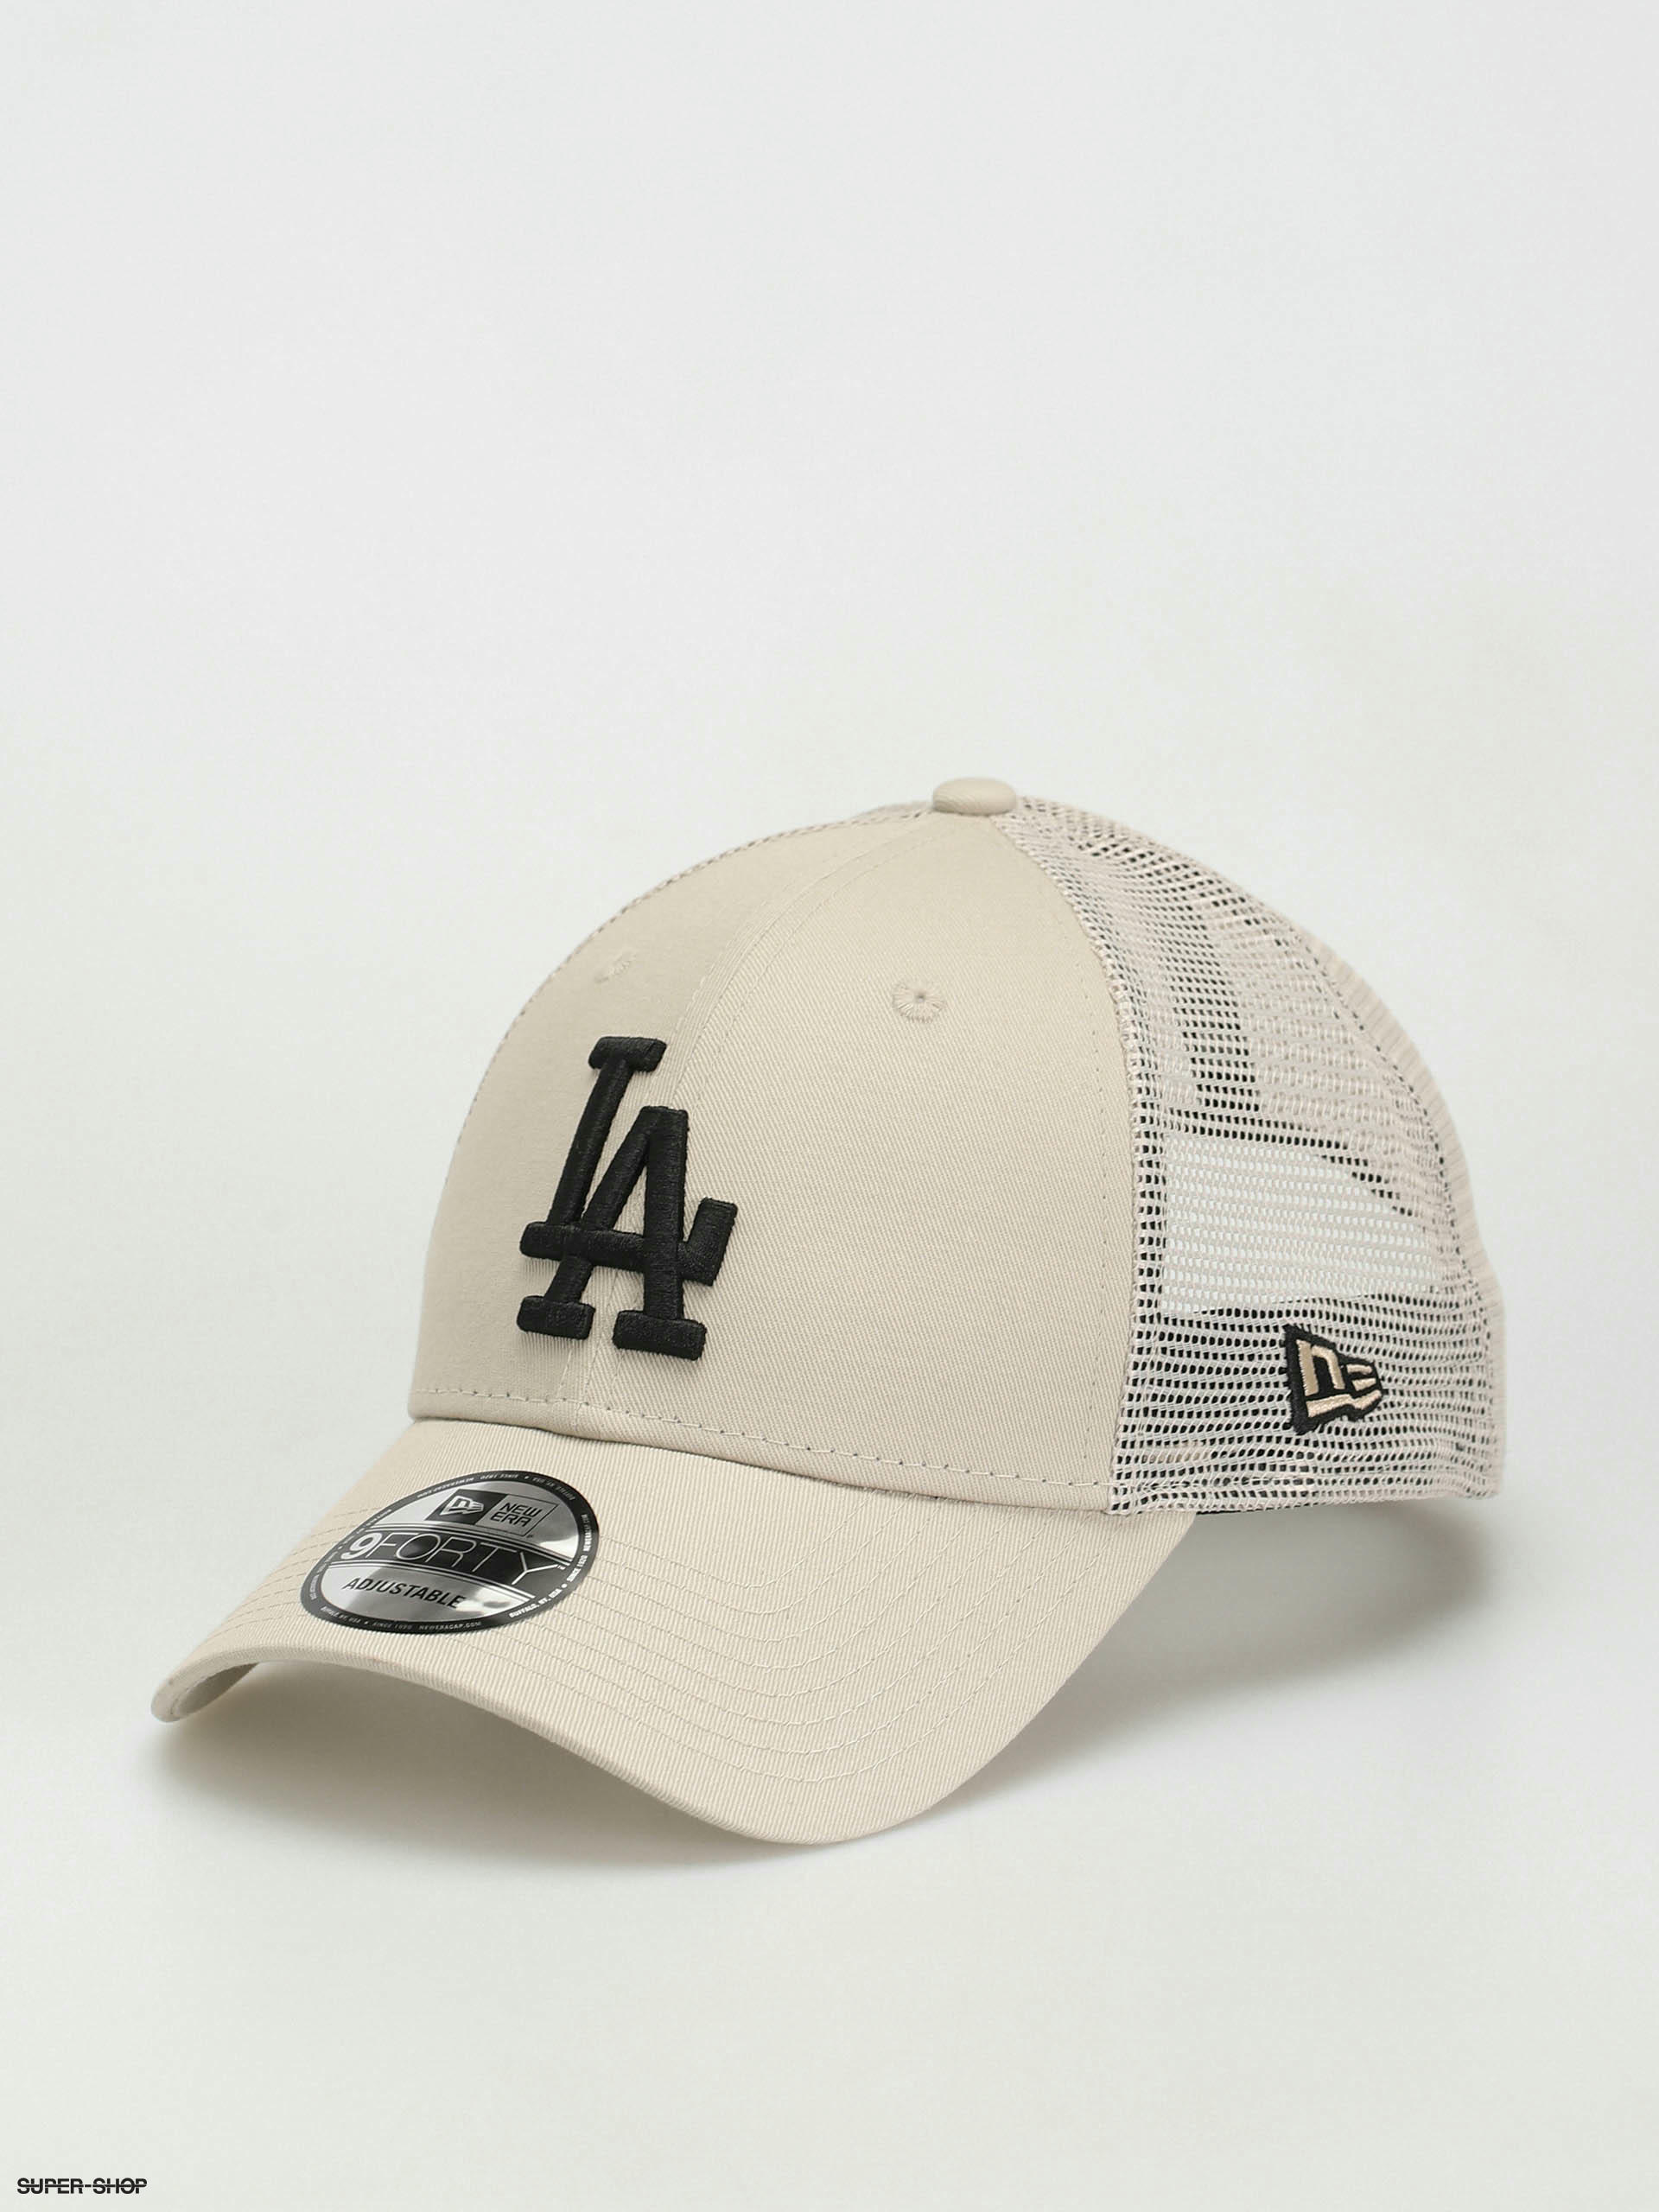 New era Trucker Los Angeles Dodgers Cap